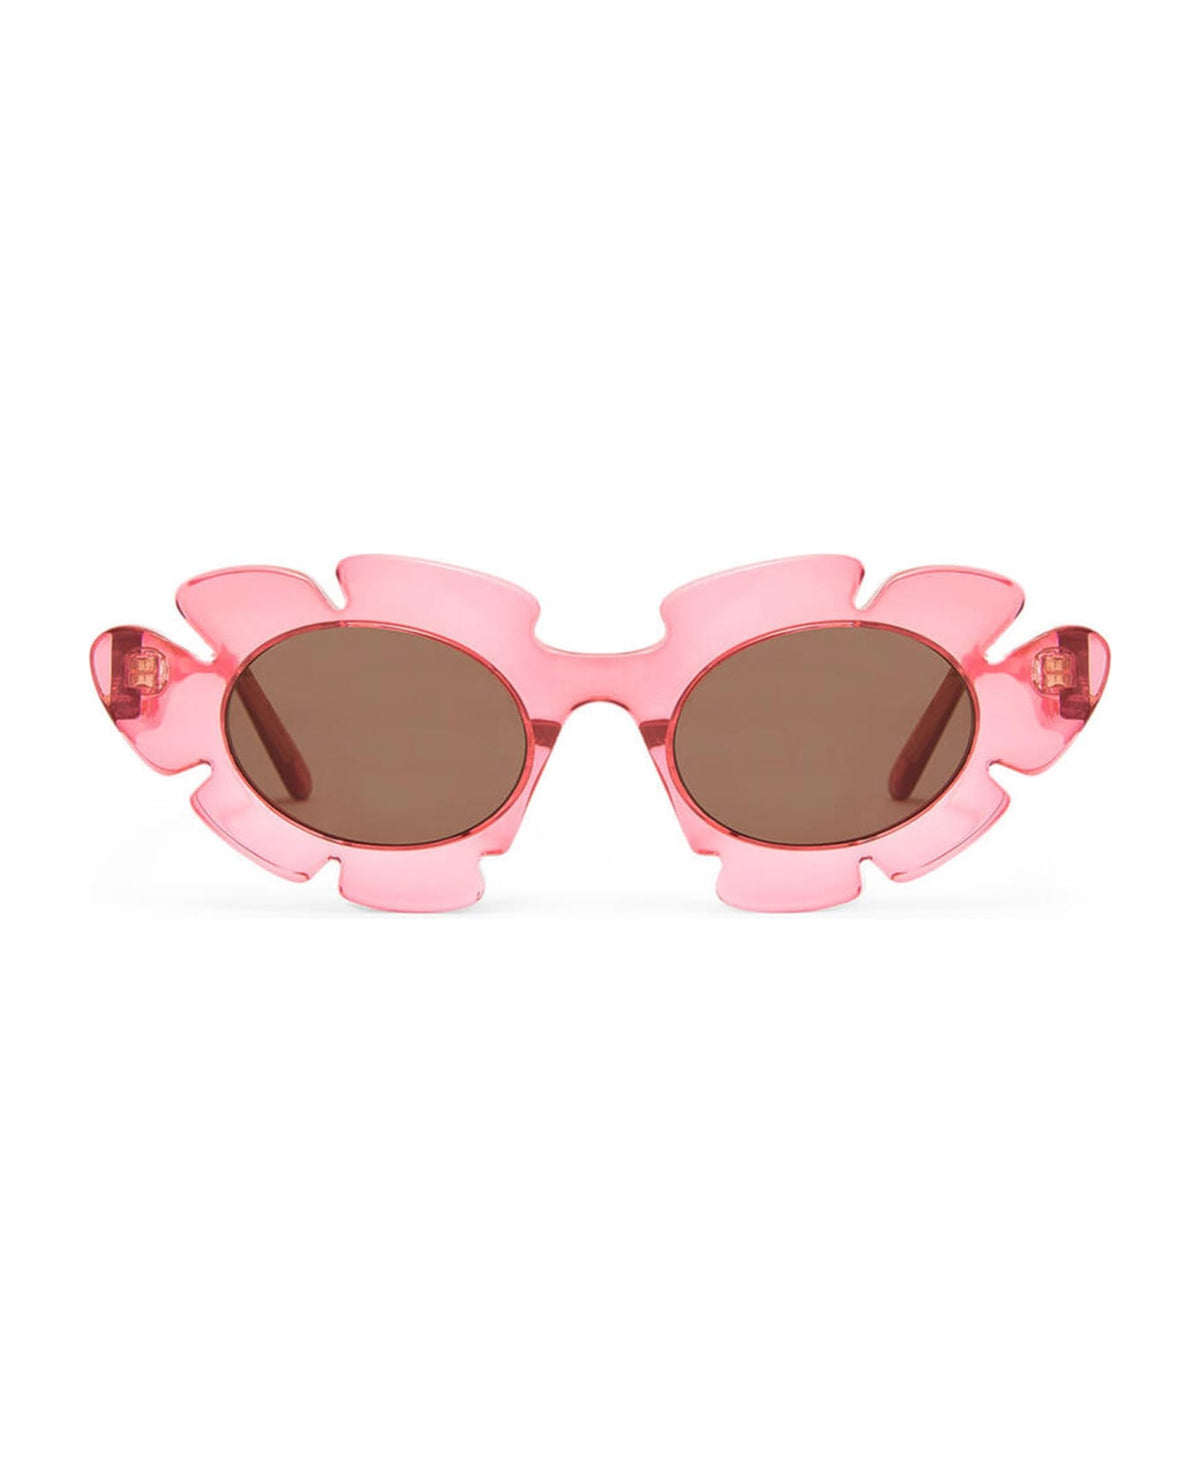 Lw40088u - Coral Pink Sunglasses